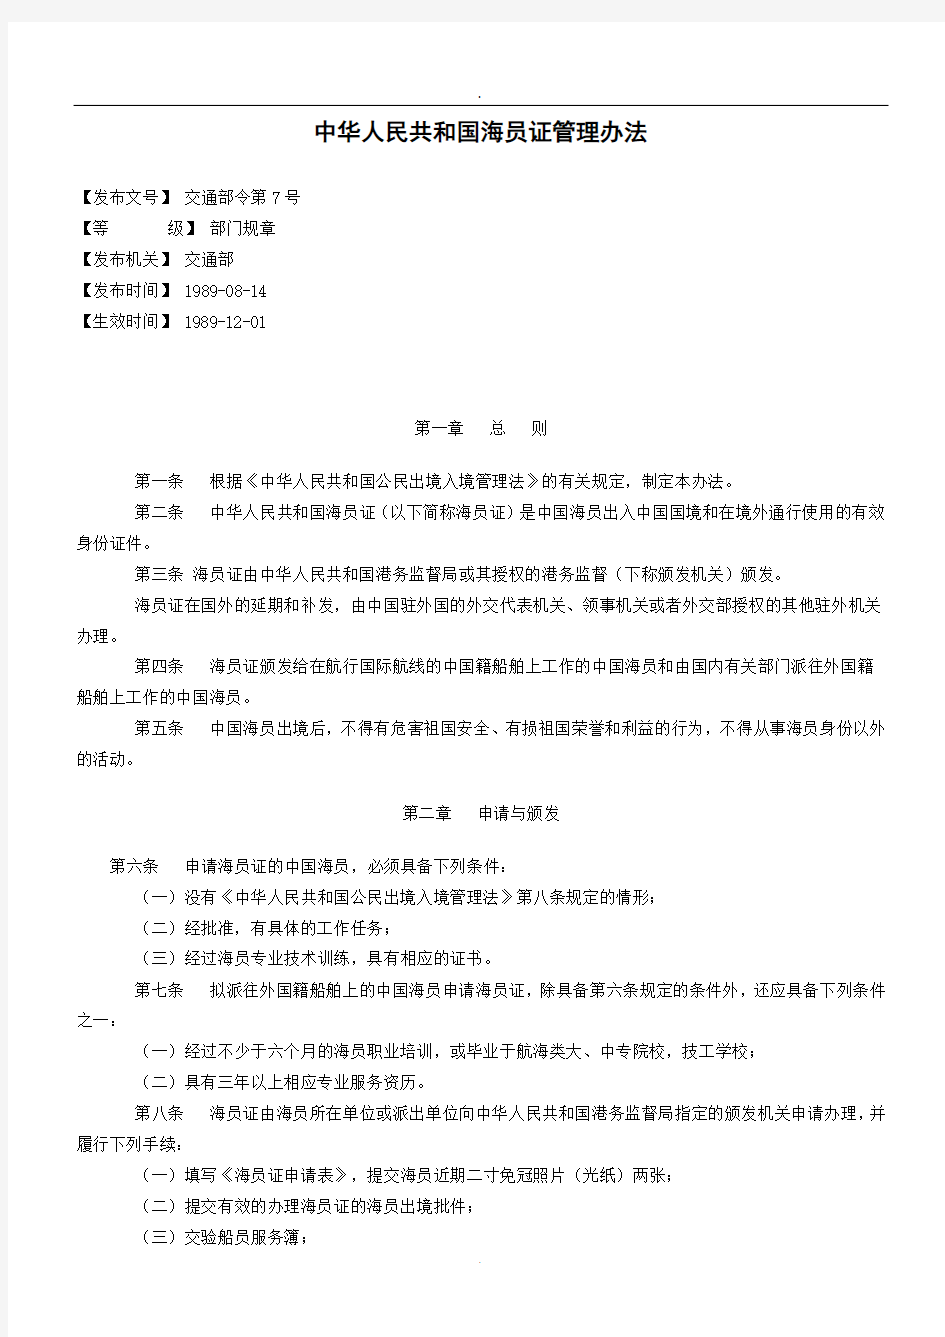 中华人民共和国海员证管理办法